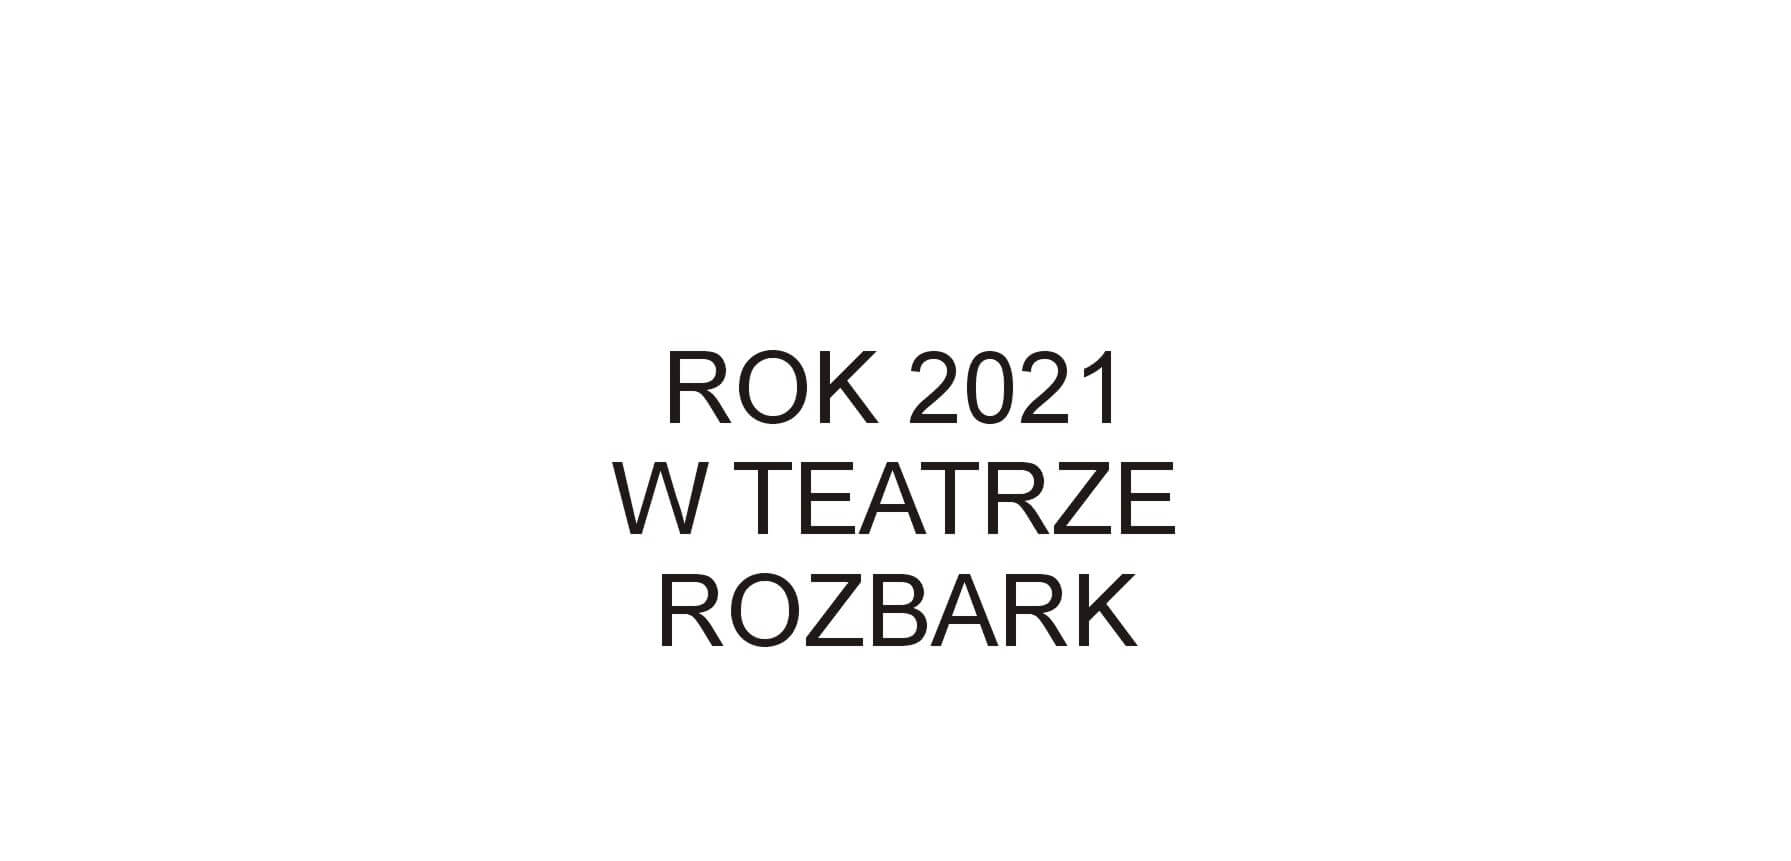 Na białym tle znajduje się czarny napis drukowanymi literami ROK 2021 W TEATRZE ROZBARK